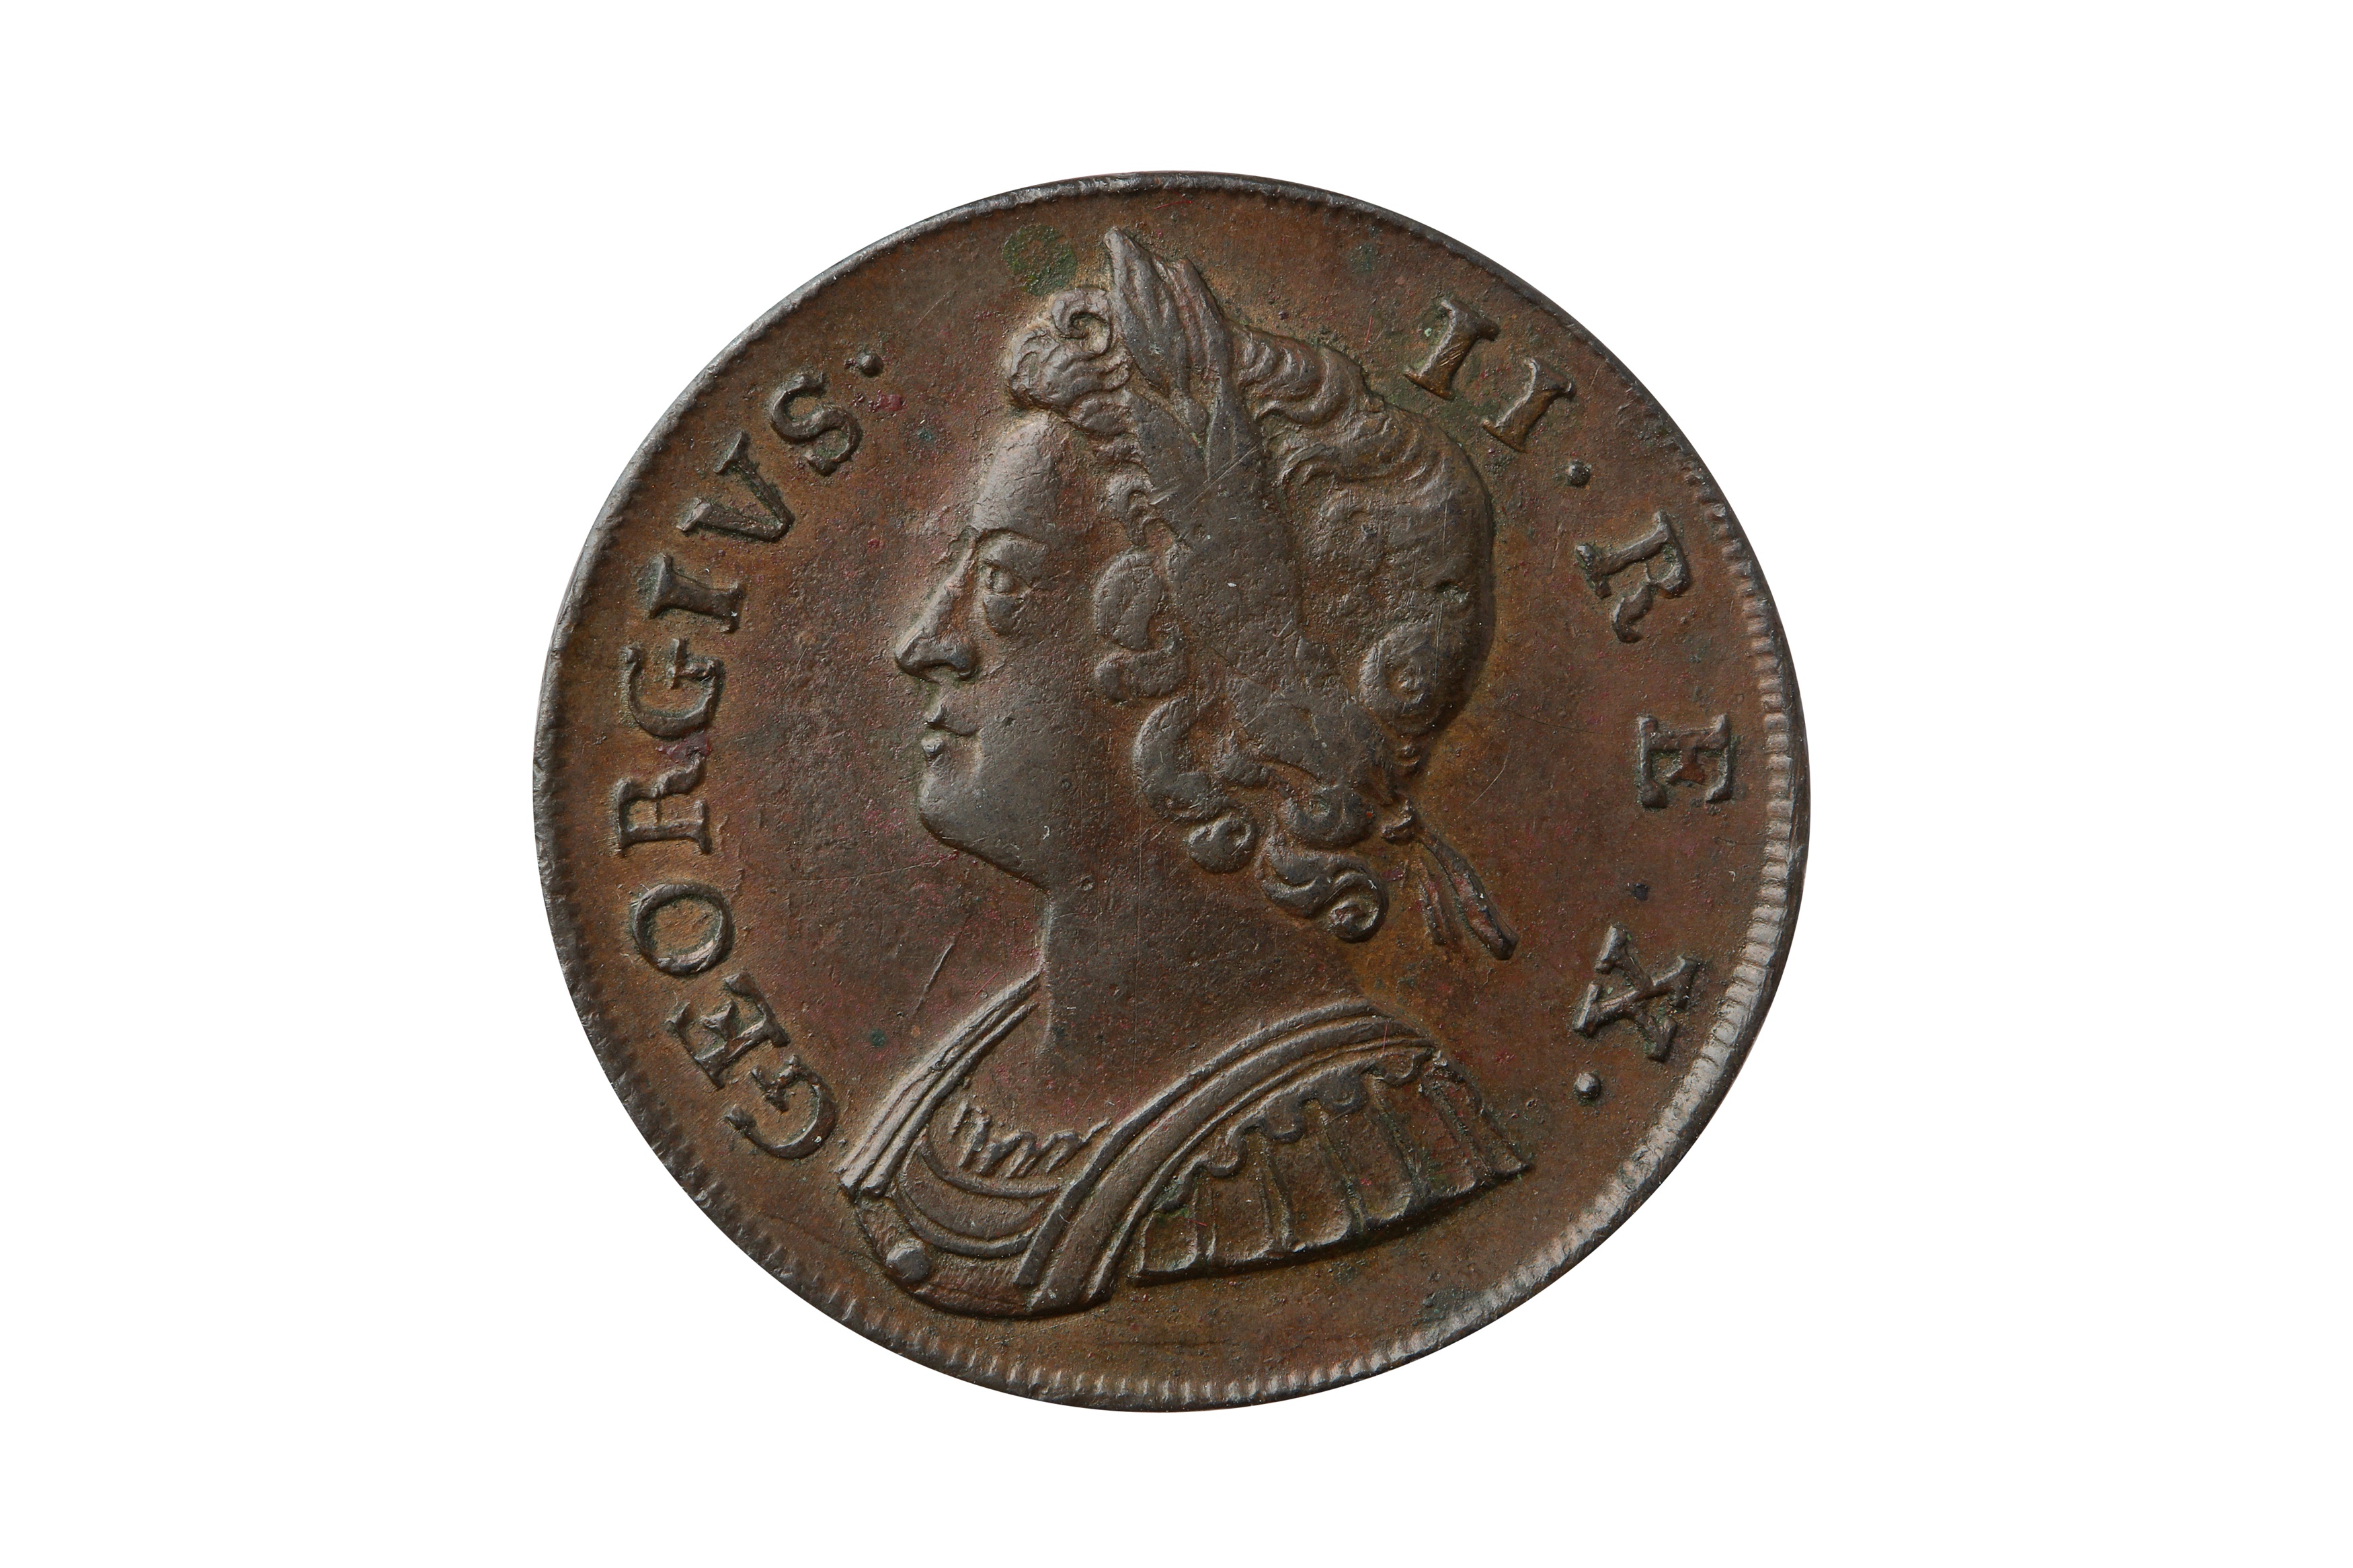 GEORGE II (1727 - 1760), 1737 HALFPENNY.